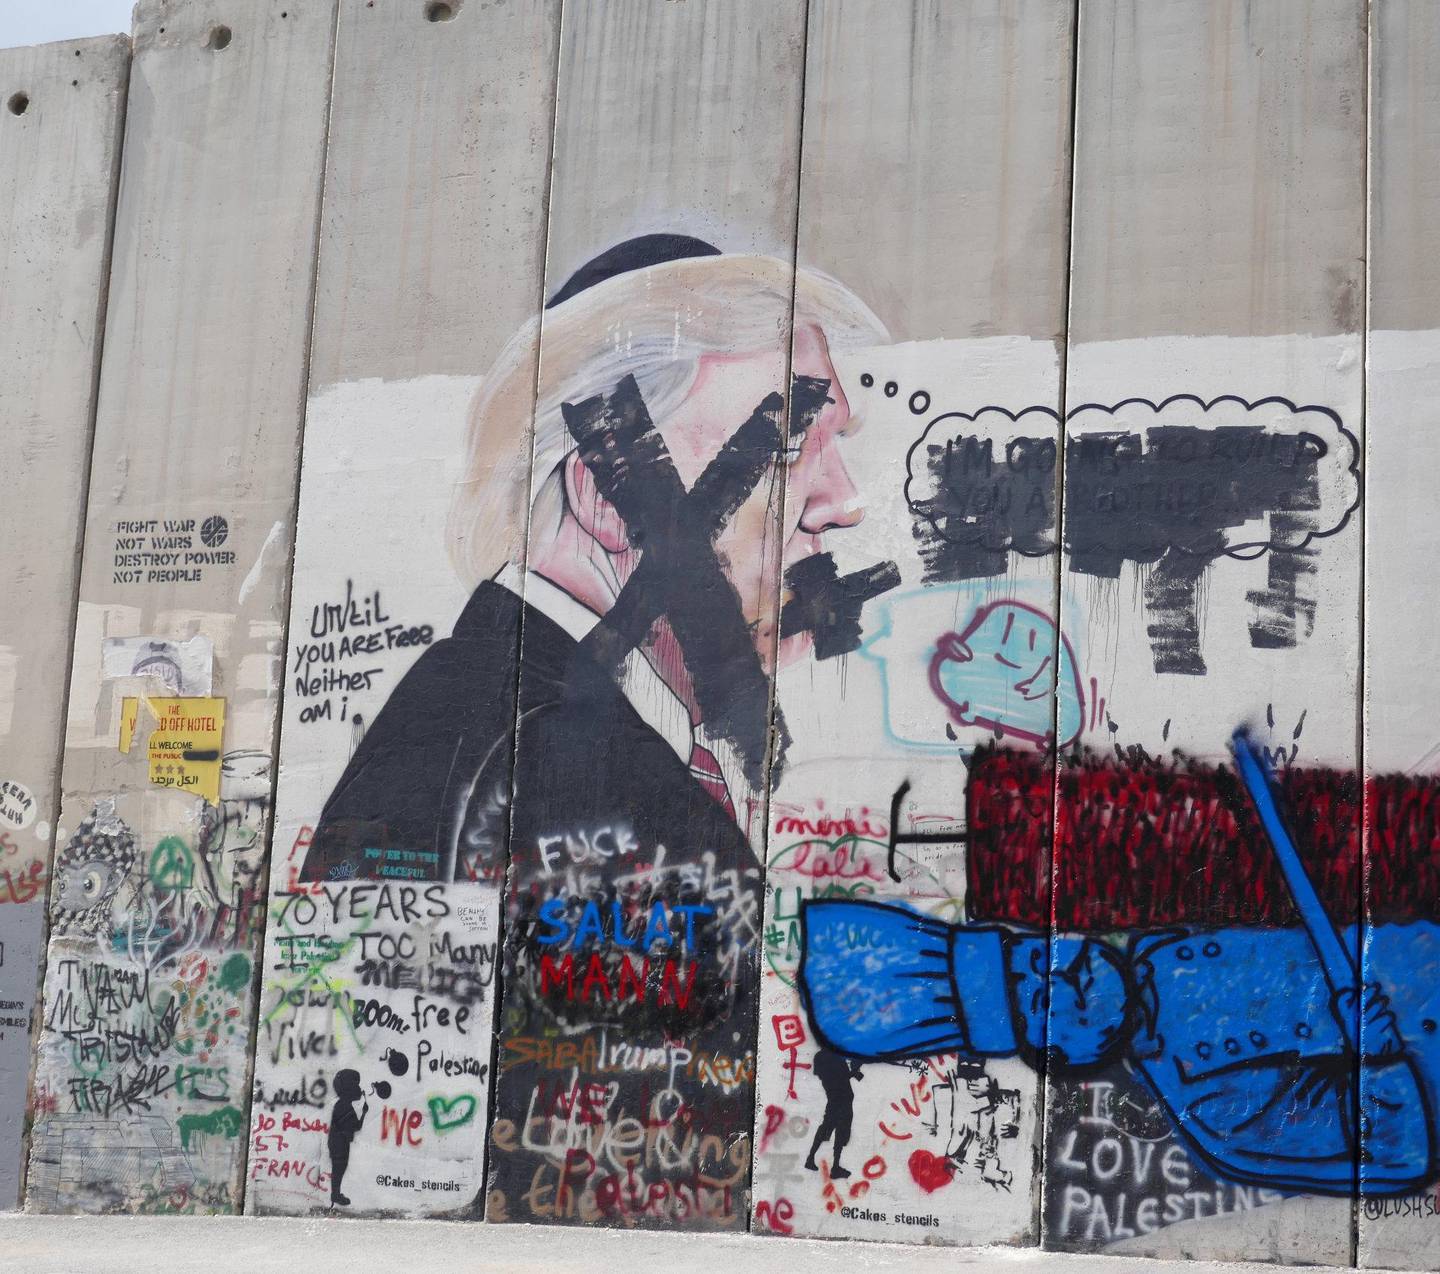 Trump-karikatur ved Betlehem på Israels barriere, som de kaller sikkerhetsgjerdet, på Vestbredden. Foto: Ines M. Zander